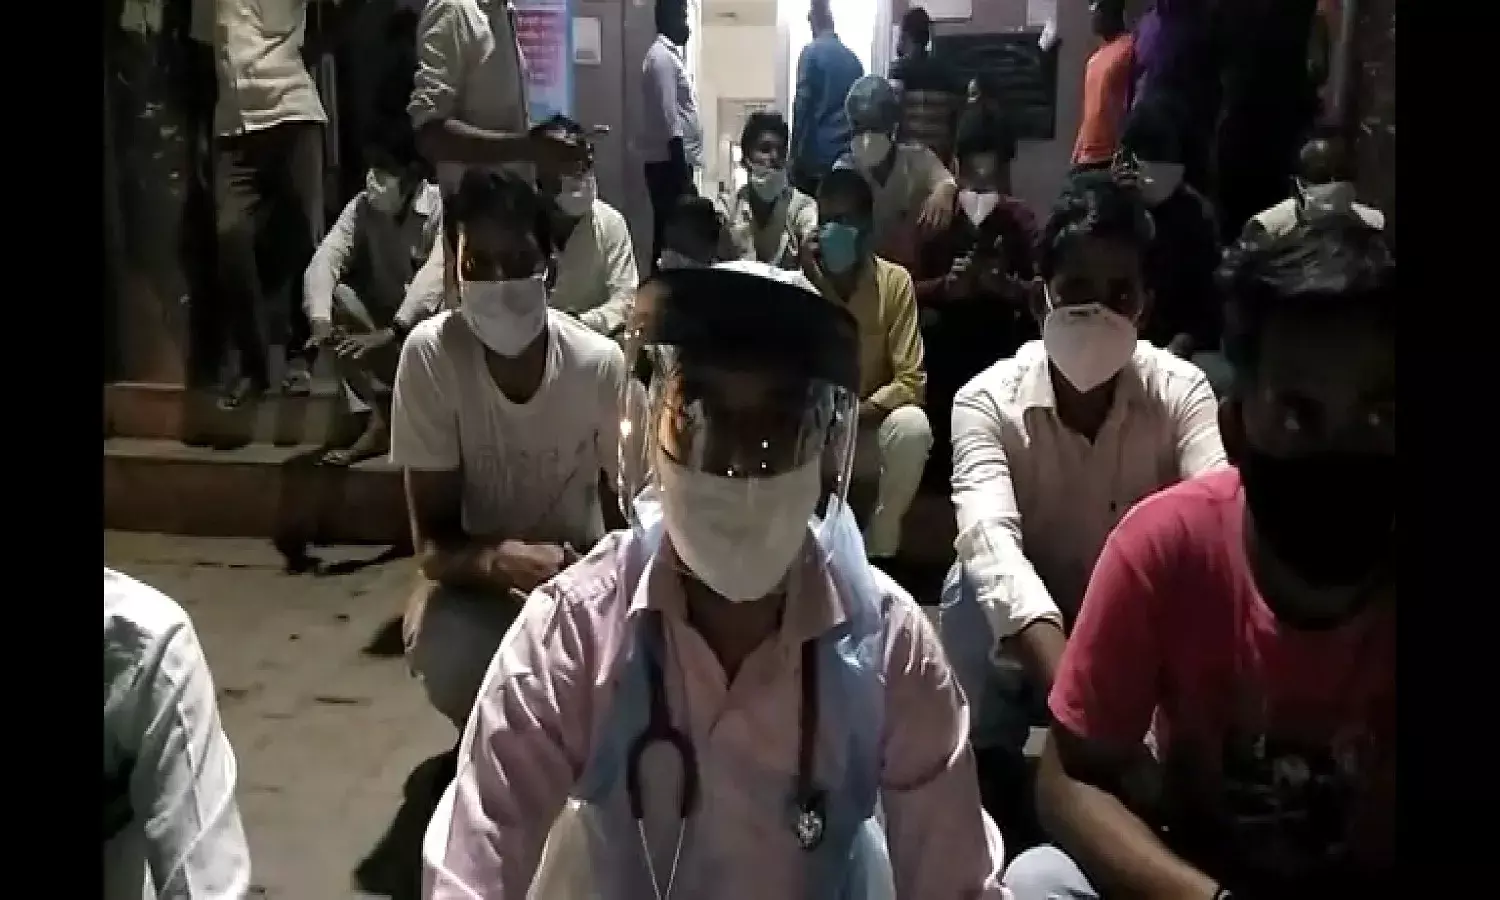 तीमारदारों ने डॉक्टर-मेडिकल कर्मियों को पीटा, कवरेज करने पहुंचे पत्रकार से कोतवाल ने की अभद्रता